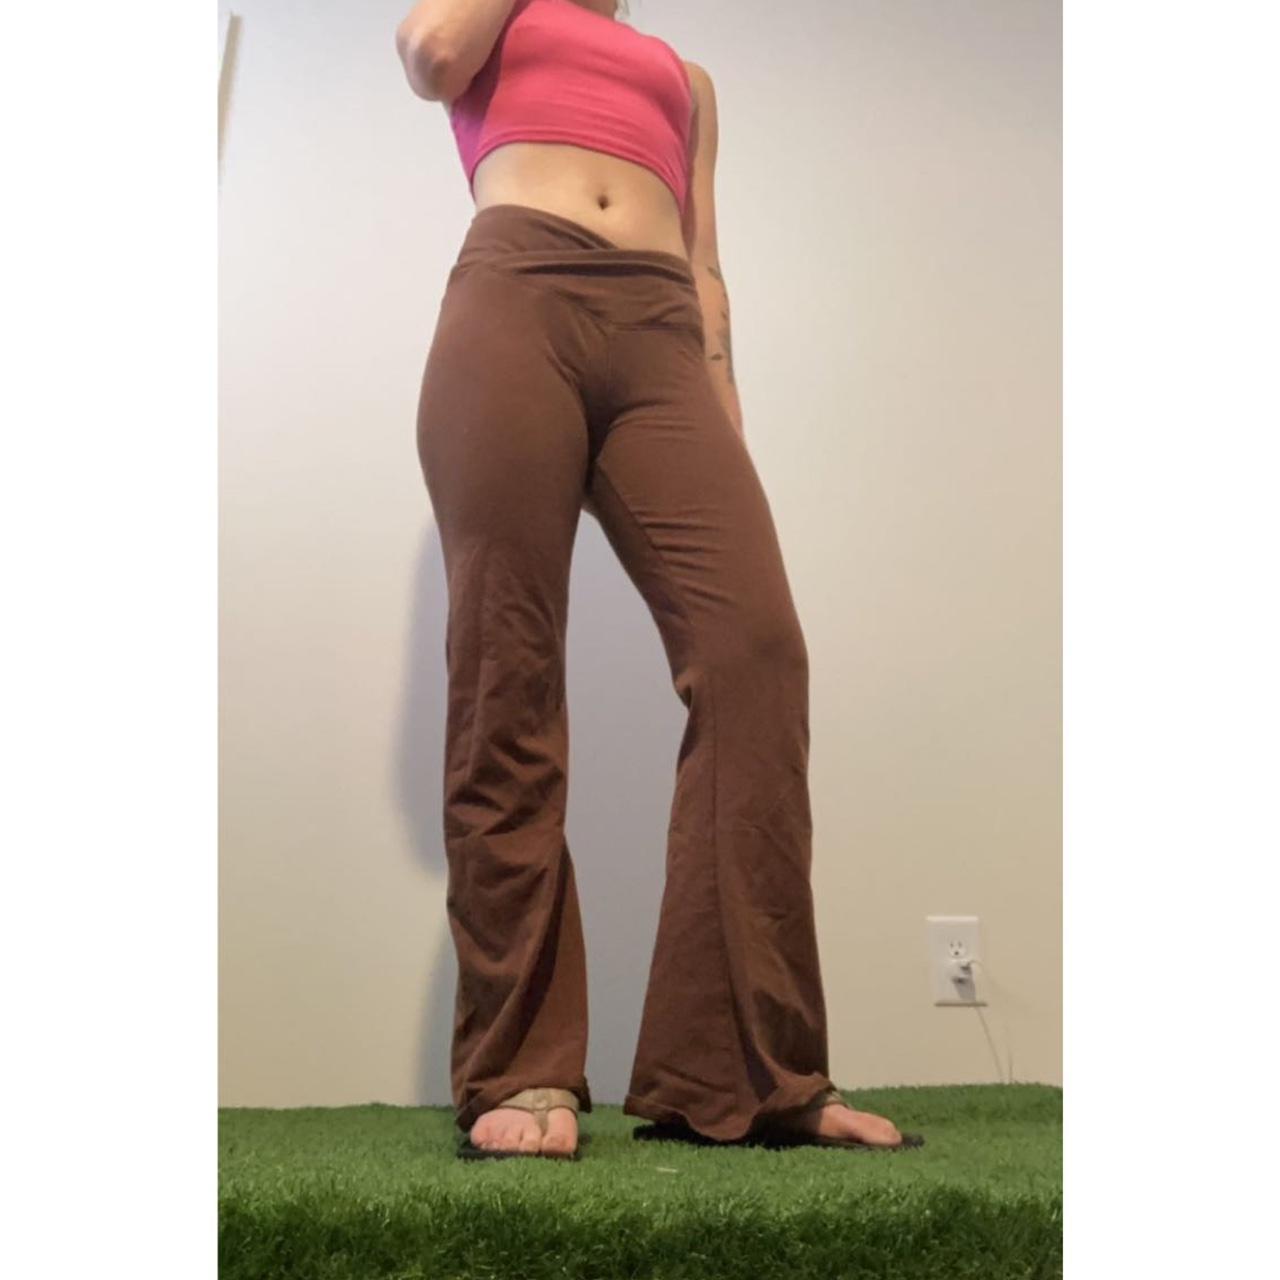 Hollister v crossover style brown flare yoga pants - Depop